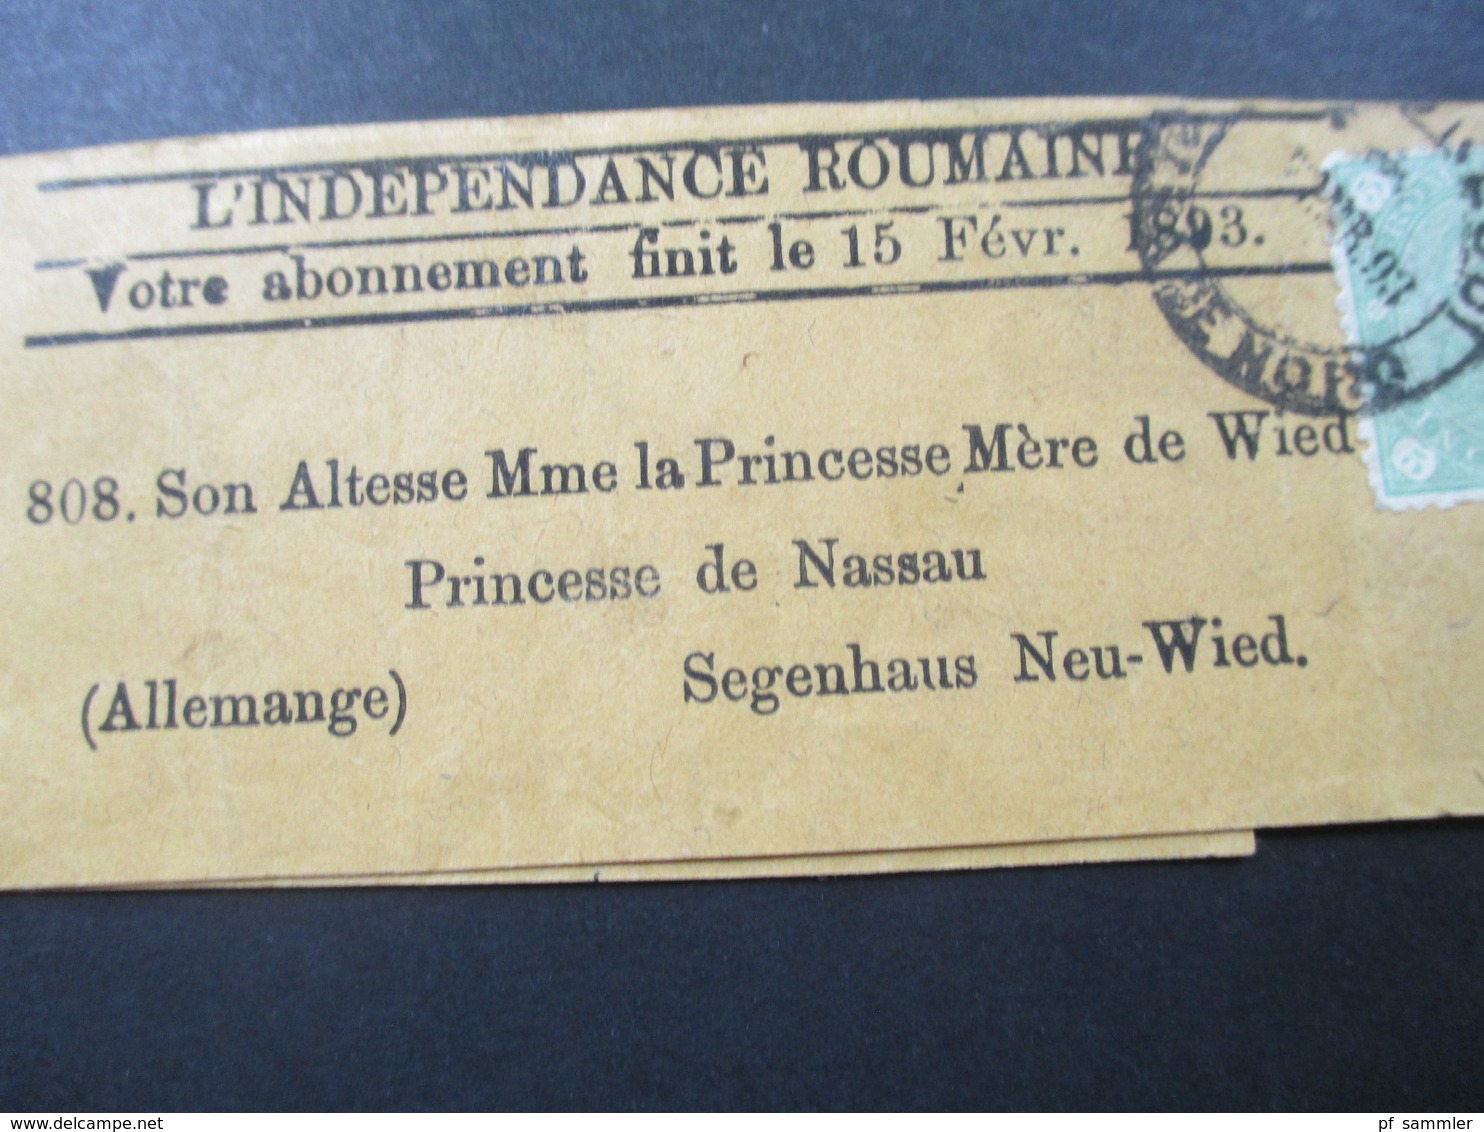 Streifband 1893 An Die Princesse De Nassau / Prinzessin Marie Fürstin Zu Wied Segenhaus Aus Rumänien. Social Philately - Covers & Documents